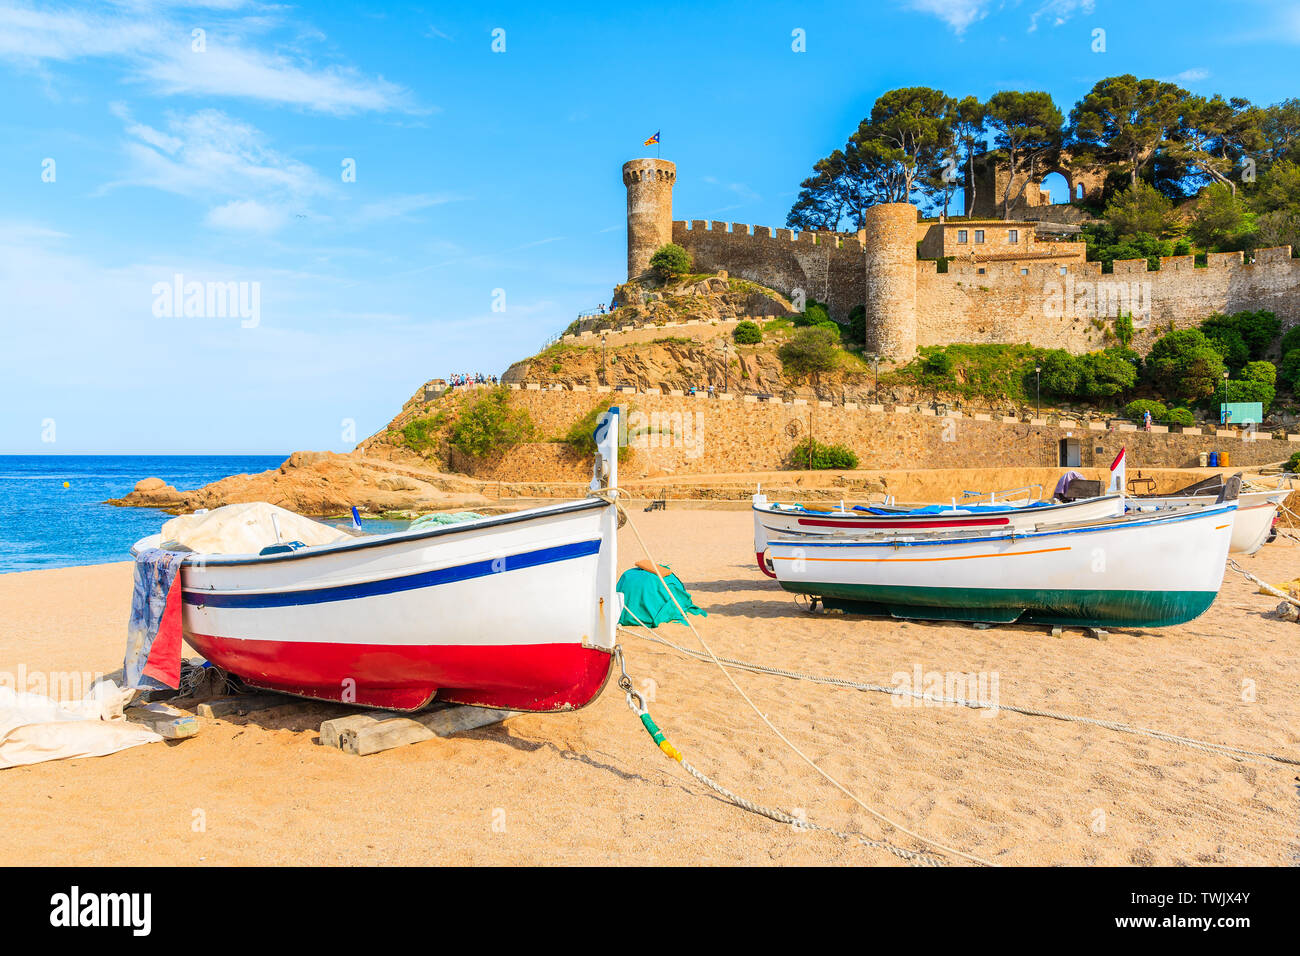 Barche di pescatori sulla spiaggia di sabbia dorata nella baia con castello in background, Tossa de Mar, Costa Brava, Spagna Foto Stock